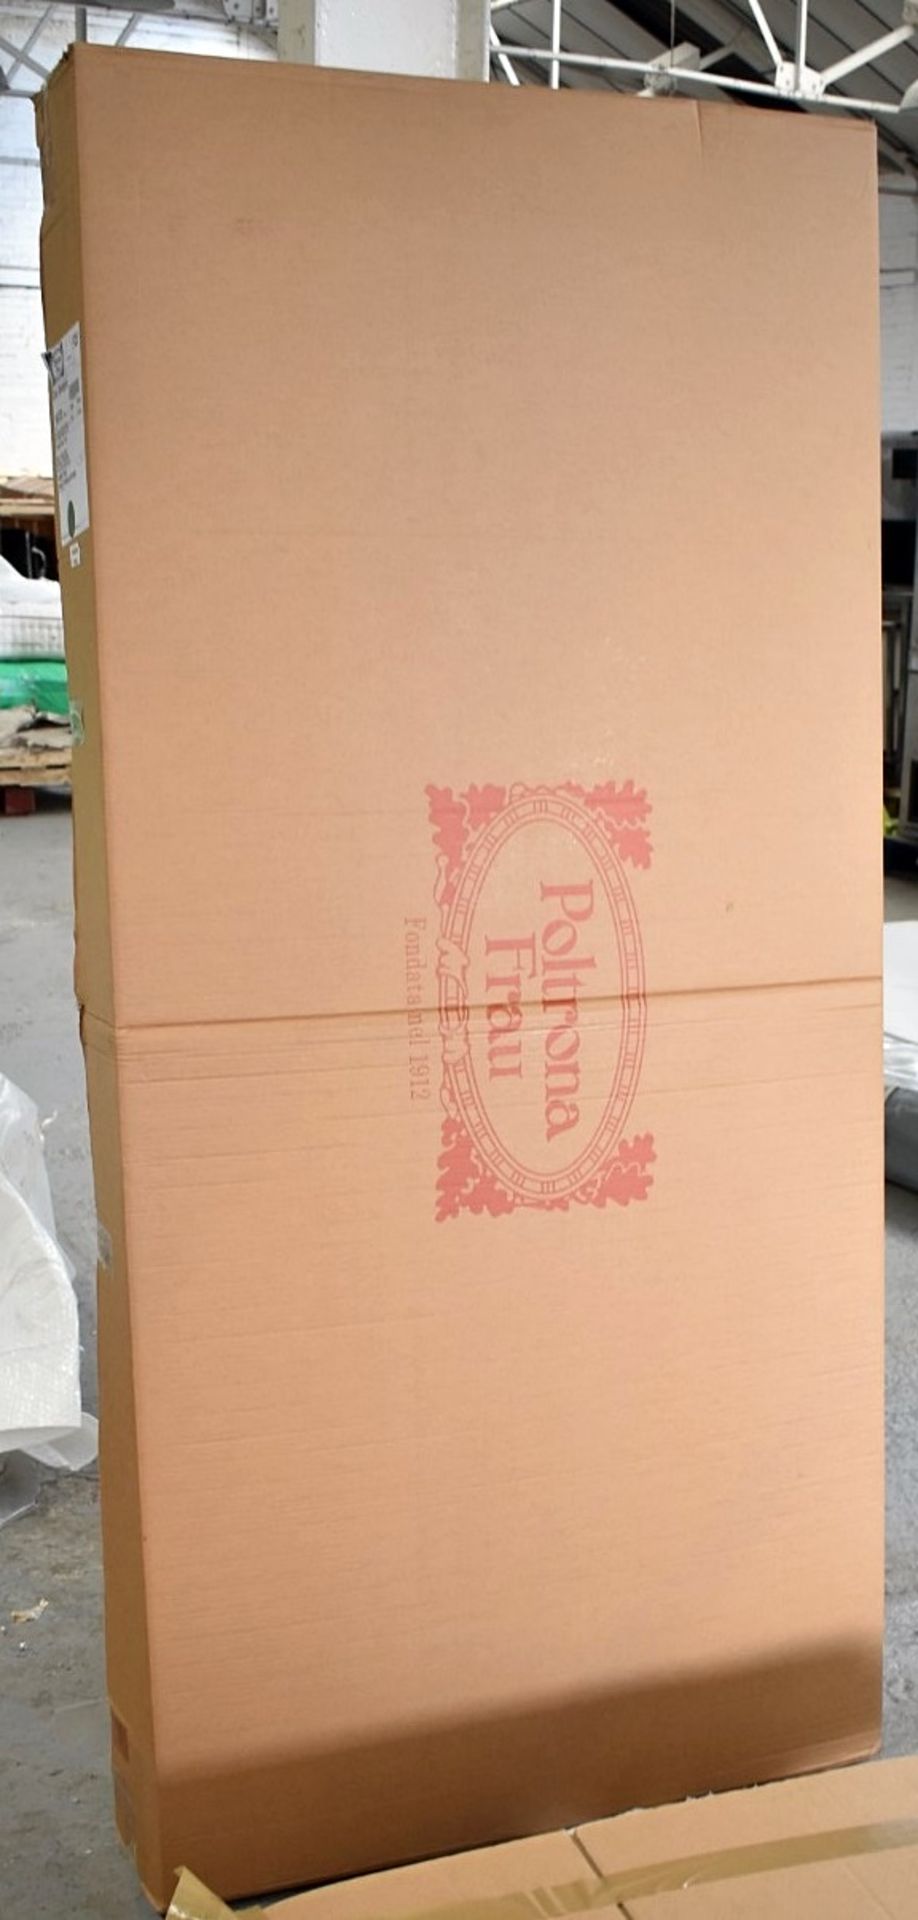 1 x POLTRONA FRAU 'Vespero' Luxury Super Kingsize Bed Base Slats - Boxed Stock - RRP £956.00 - Image 6 of 6